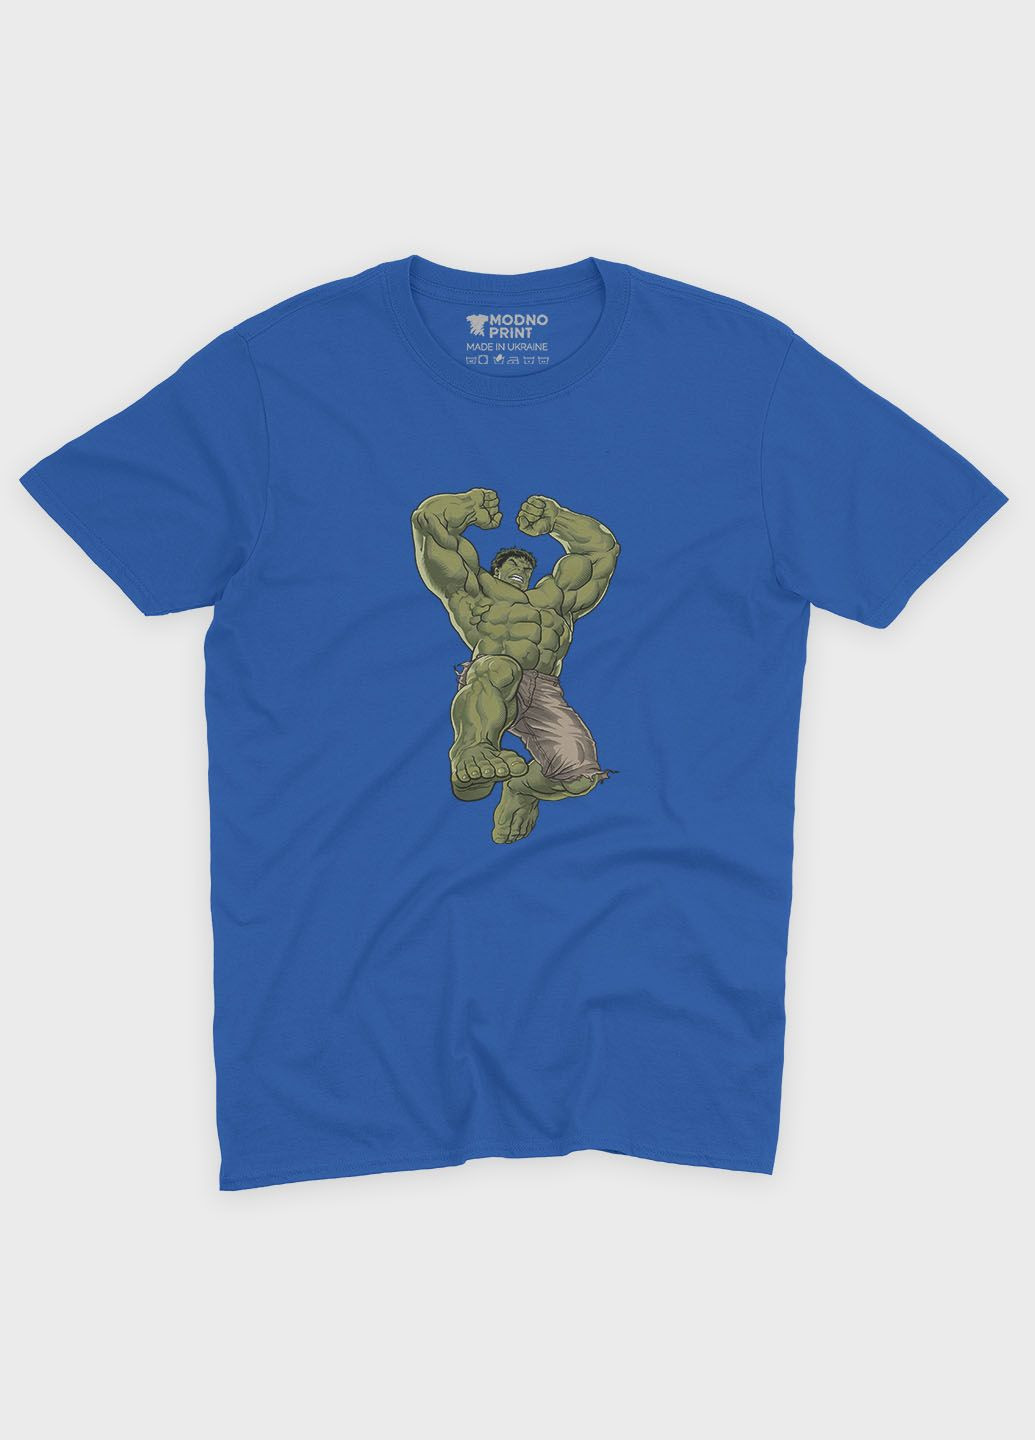 Синя демісезонна футболка для дівчинки з принтом супергероя - халк (ts001-1-grr-006-018-011-g) Modno